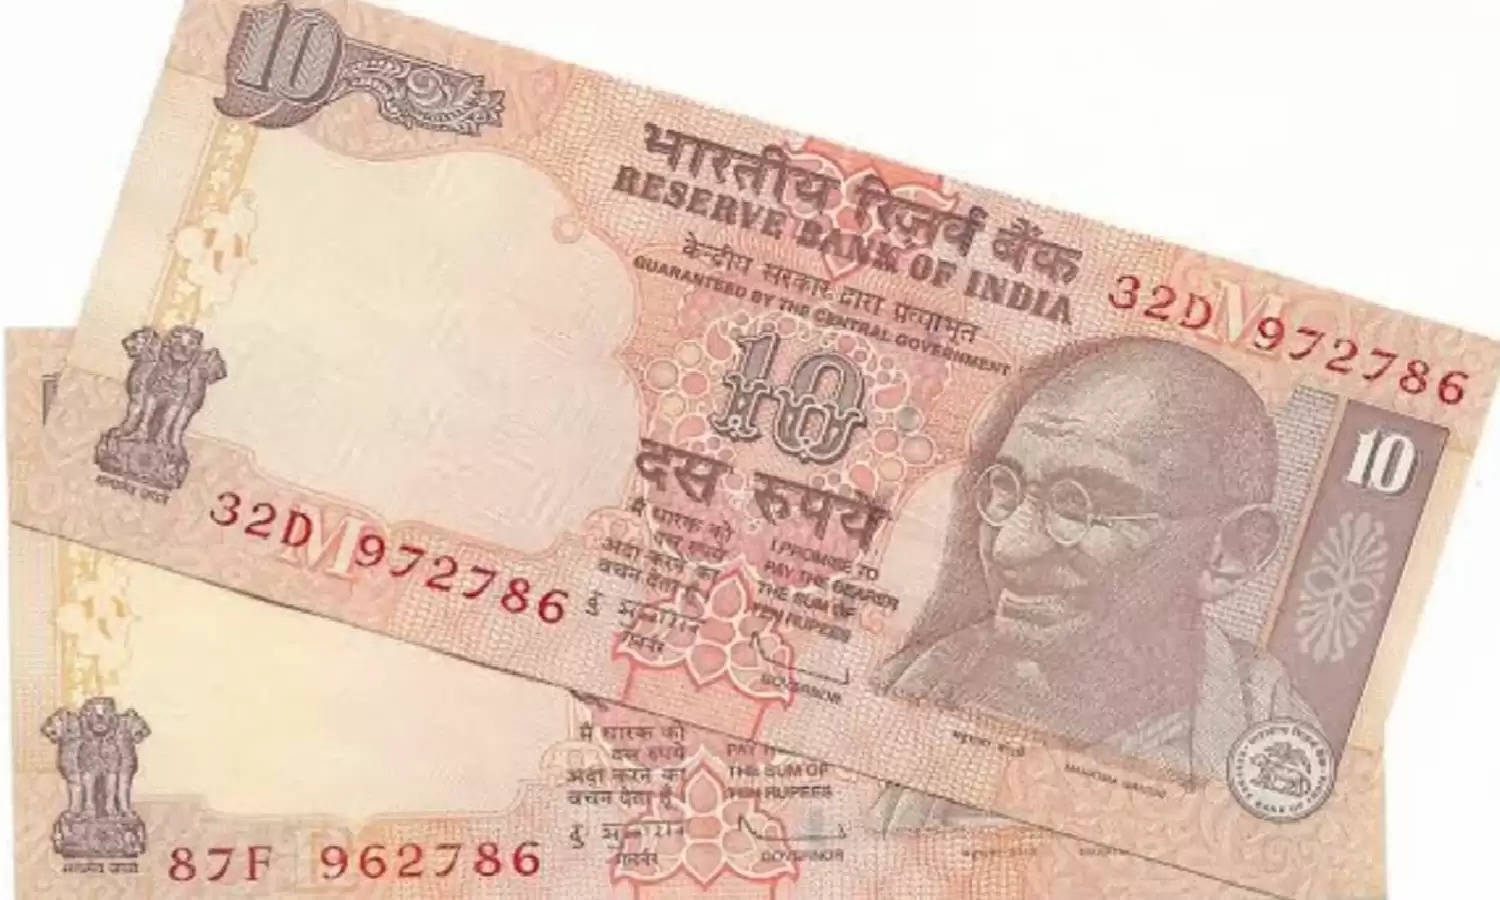 Indian Currency: इस सीरियल नंबर वाले नोट के मिलेंगे लाखों रुपये, यूं जानिए डिटेल